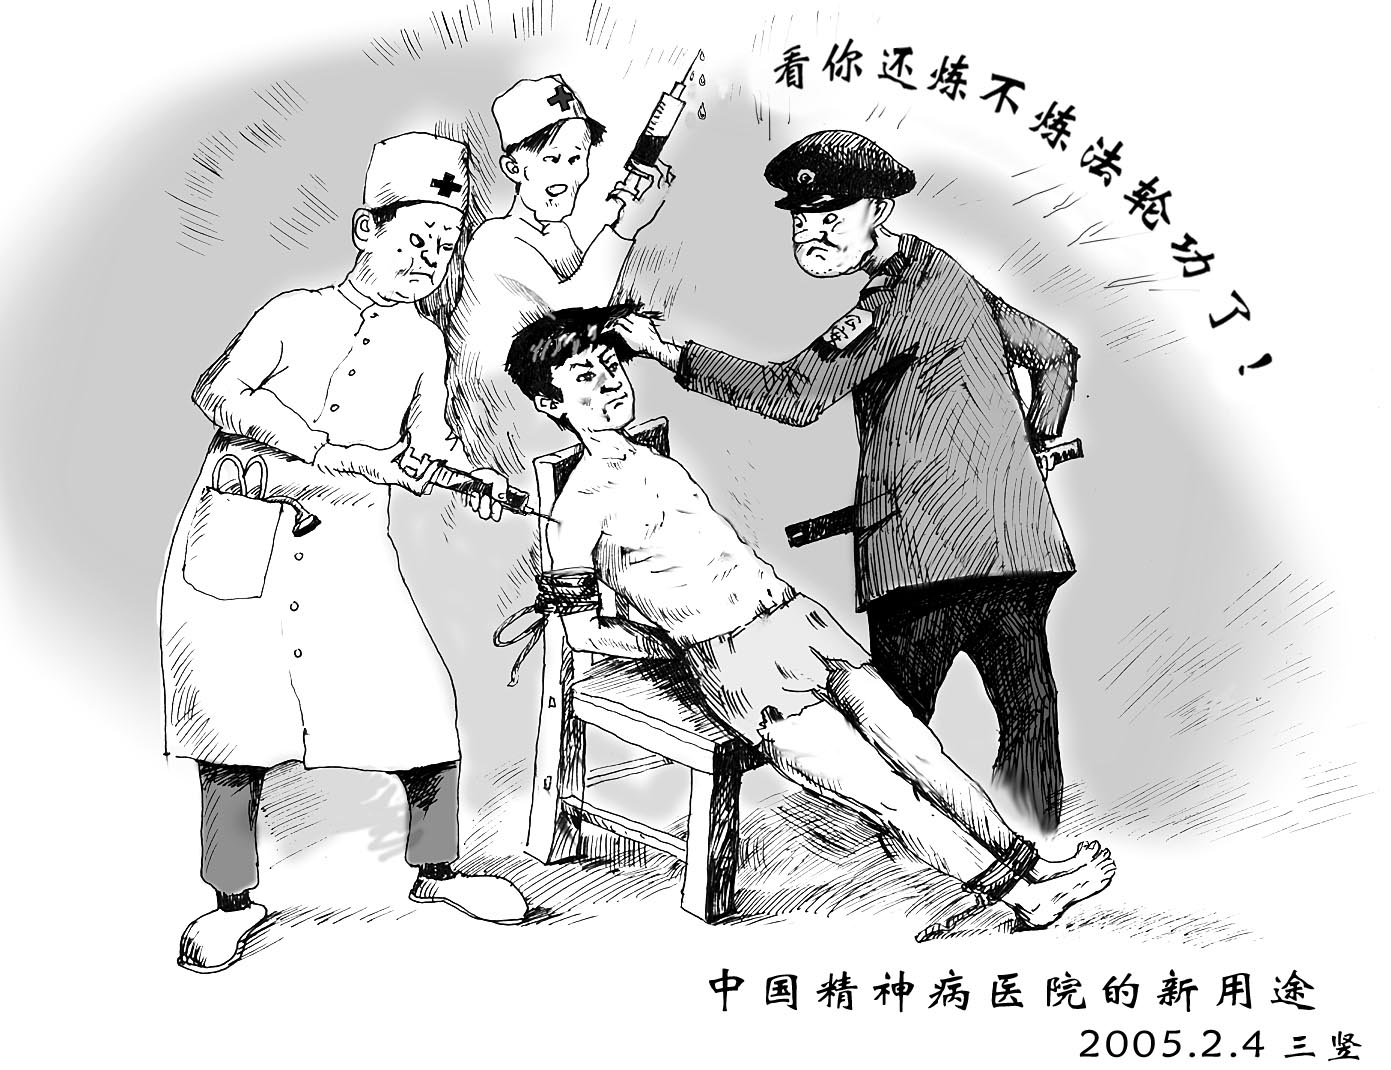 Image for article Déjà incarcérée onze fois pour sa croyance, une femme du Hunan est arrêtée à nouveau et internée contre son gré dans un hôpital psychiatrique